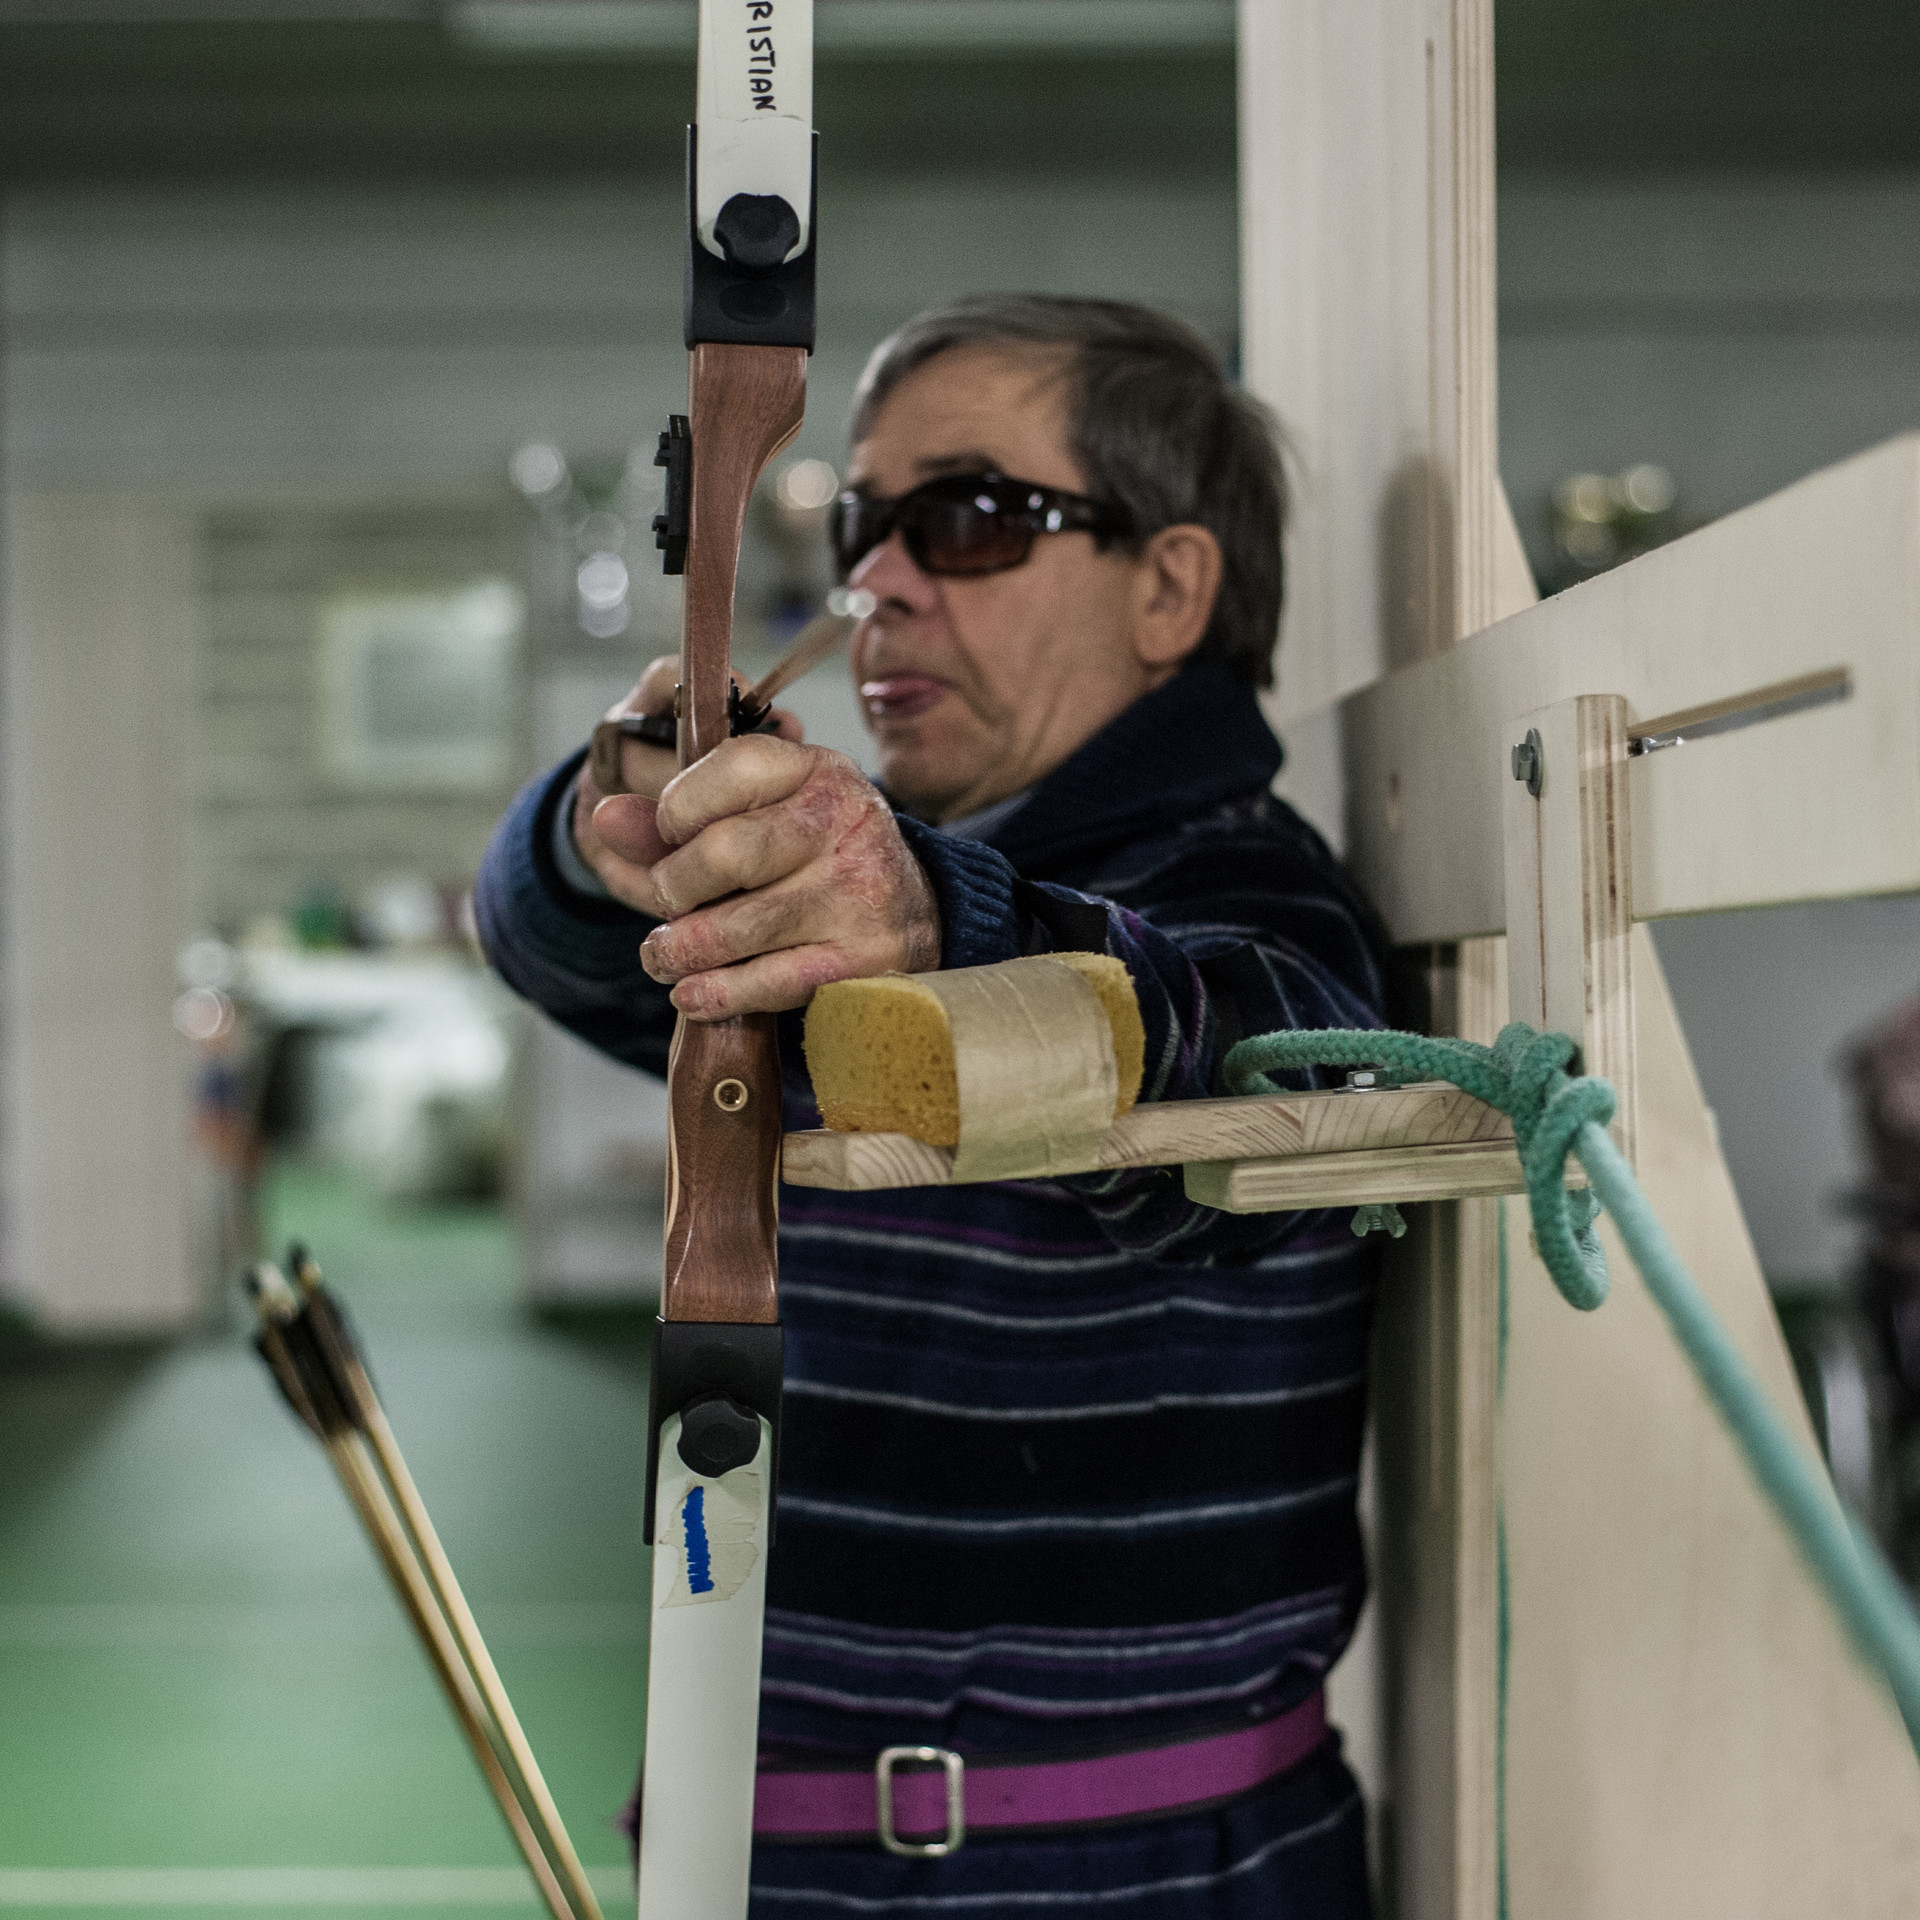 Santo, utente della Lega del Filo d’Oro, pratica con passione il tiro con l’arco, grazie ai supporti messi a disposizione dalla Fondazione.